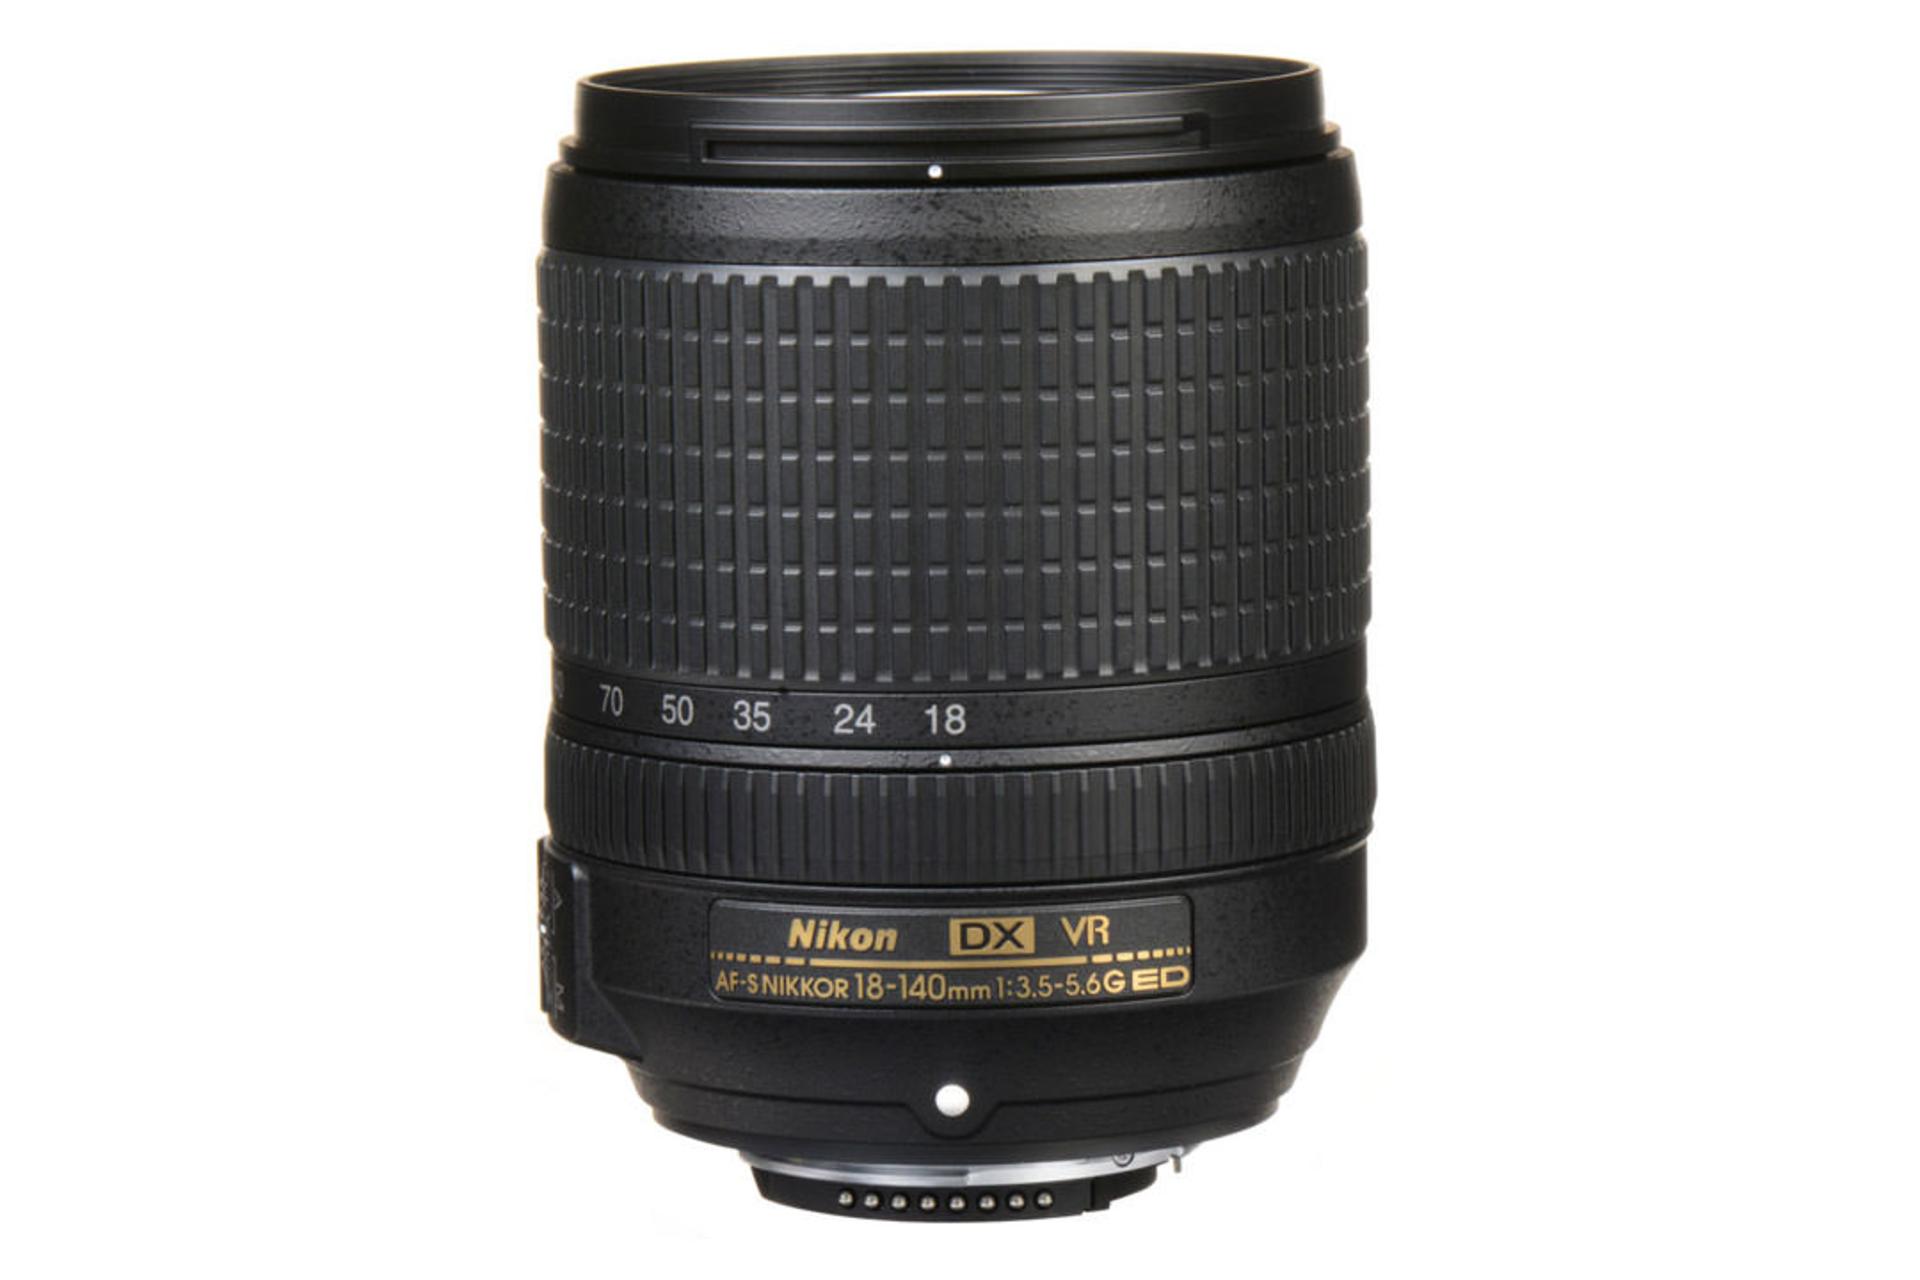 Nikon AF-S DX Nikkor 18-140mm f/3.5-5.6G ED VR	